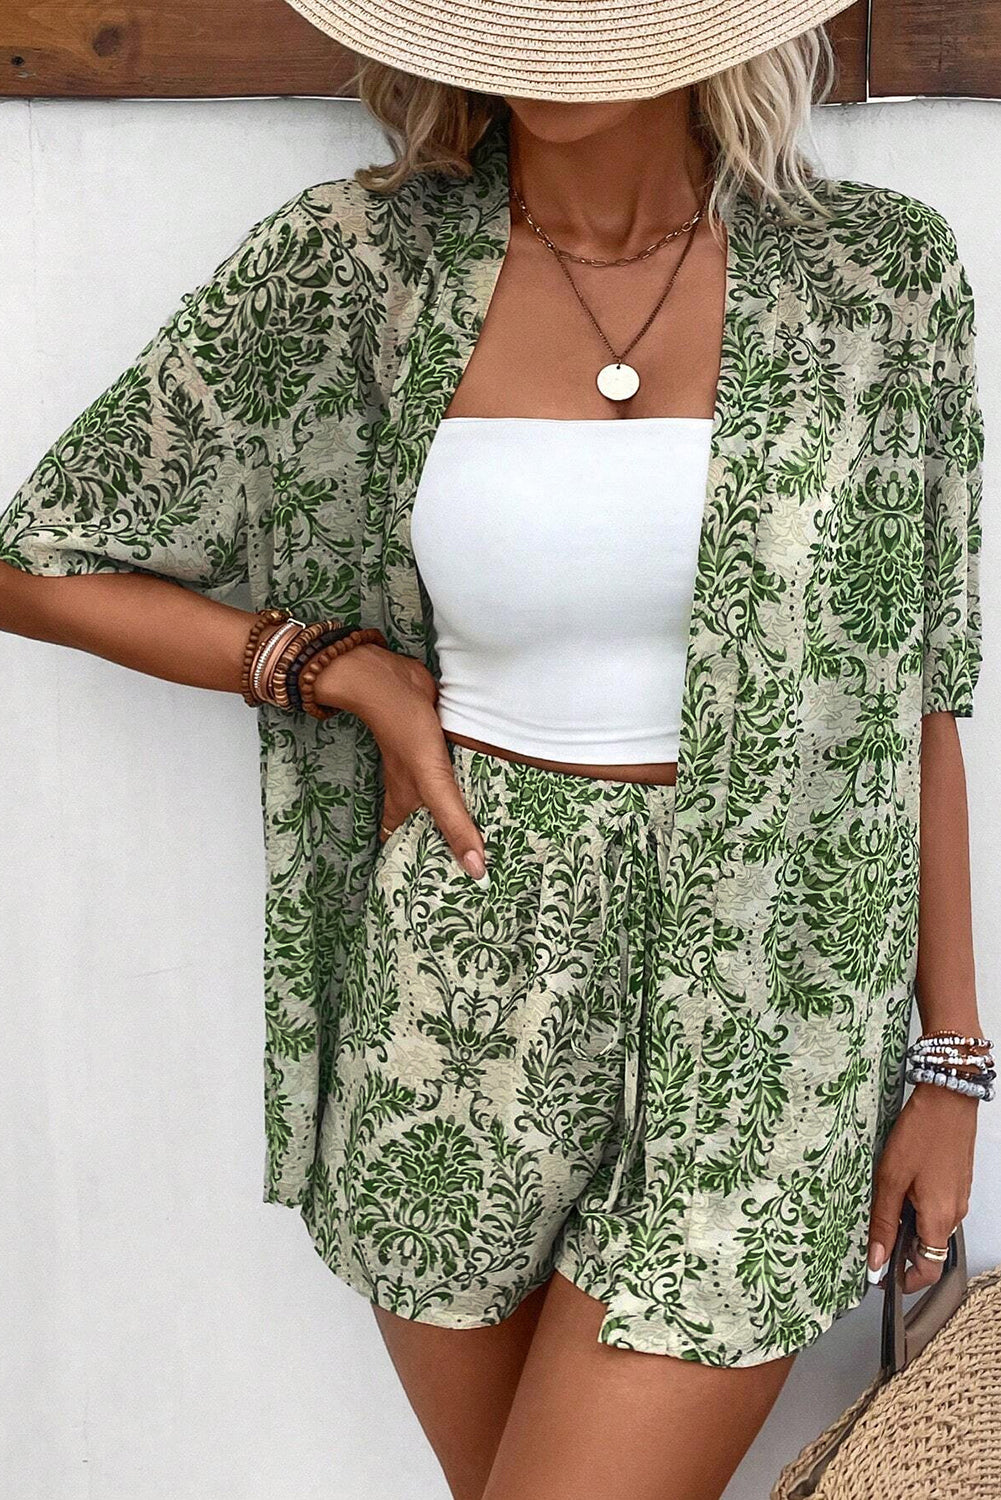 Grünes Vintage-Outfit mit Blumenmuster, offenem Oberteil und Shorts